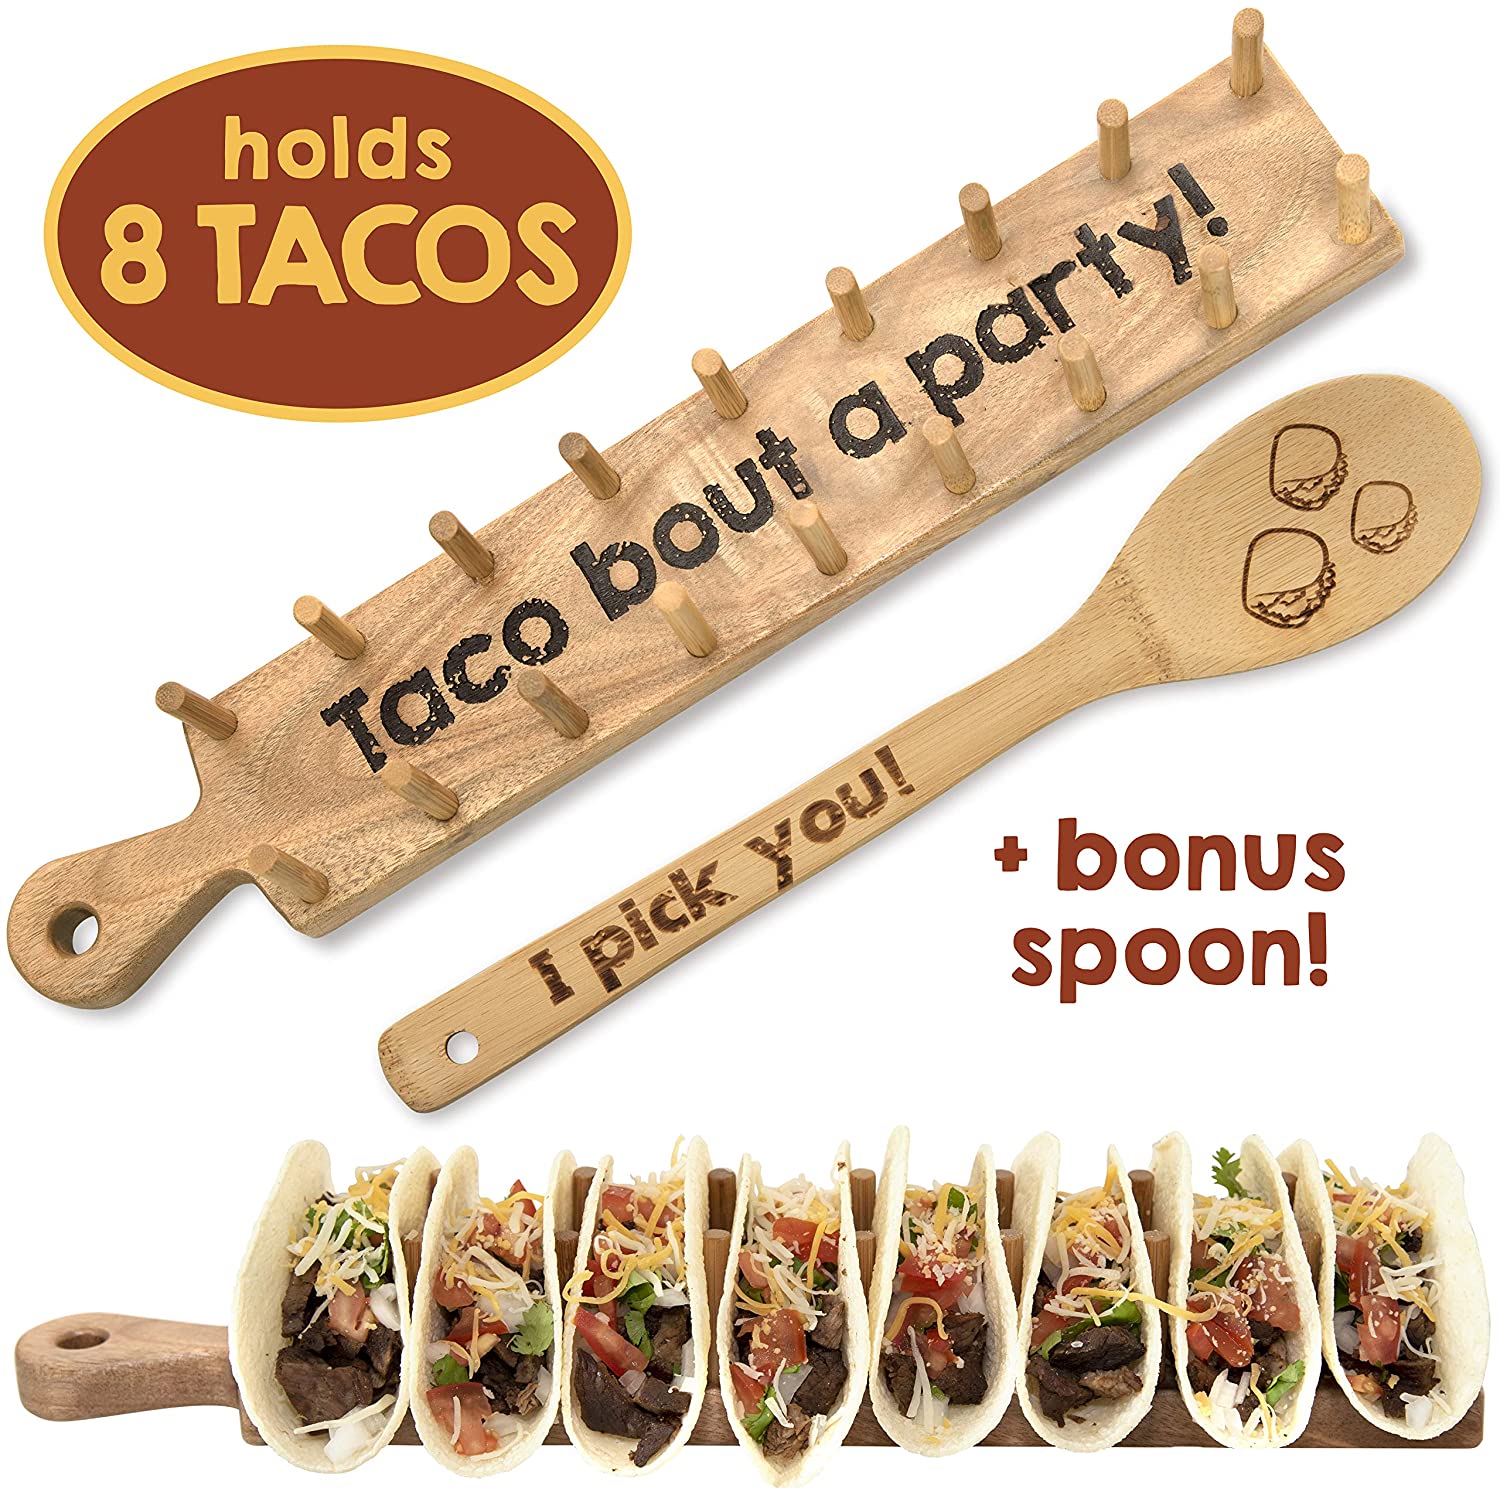 Taco Tuesday Baby!!! How fun are these! ⋆ malarkey